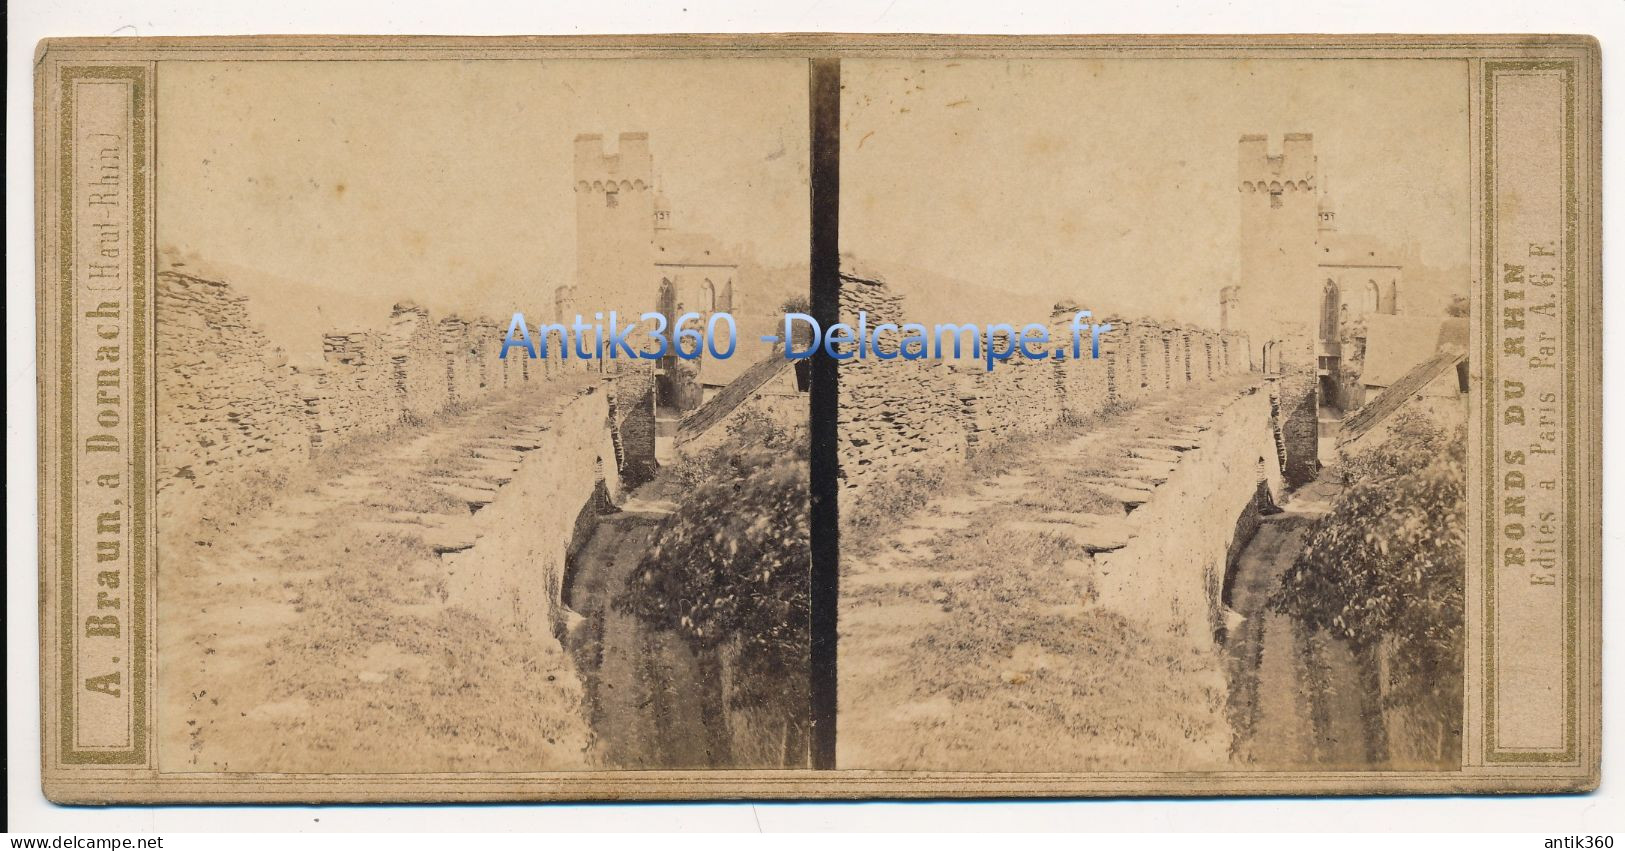 Photographie Ancienne Vue Stéréoscopique Circa 1860 Allemagne Murs D'Enceinte D' Oberwesel Photographe Adolphe BRAUN - Stereoscopic